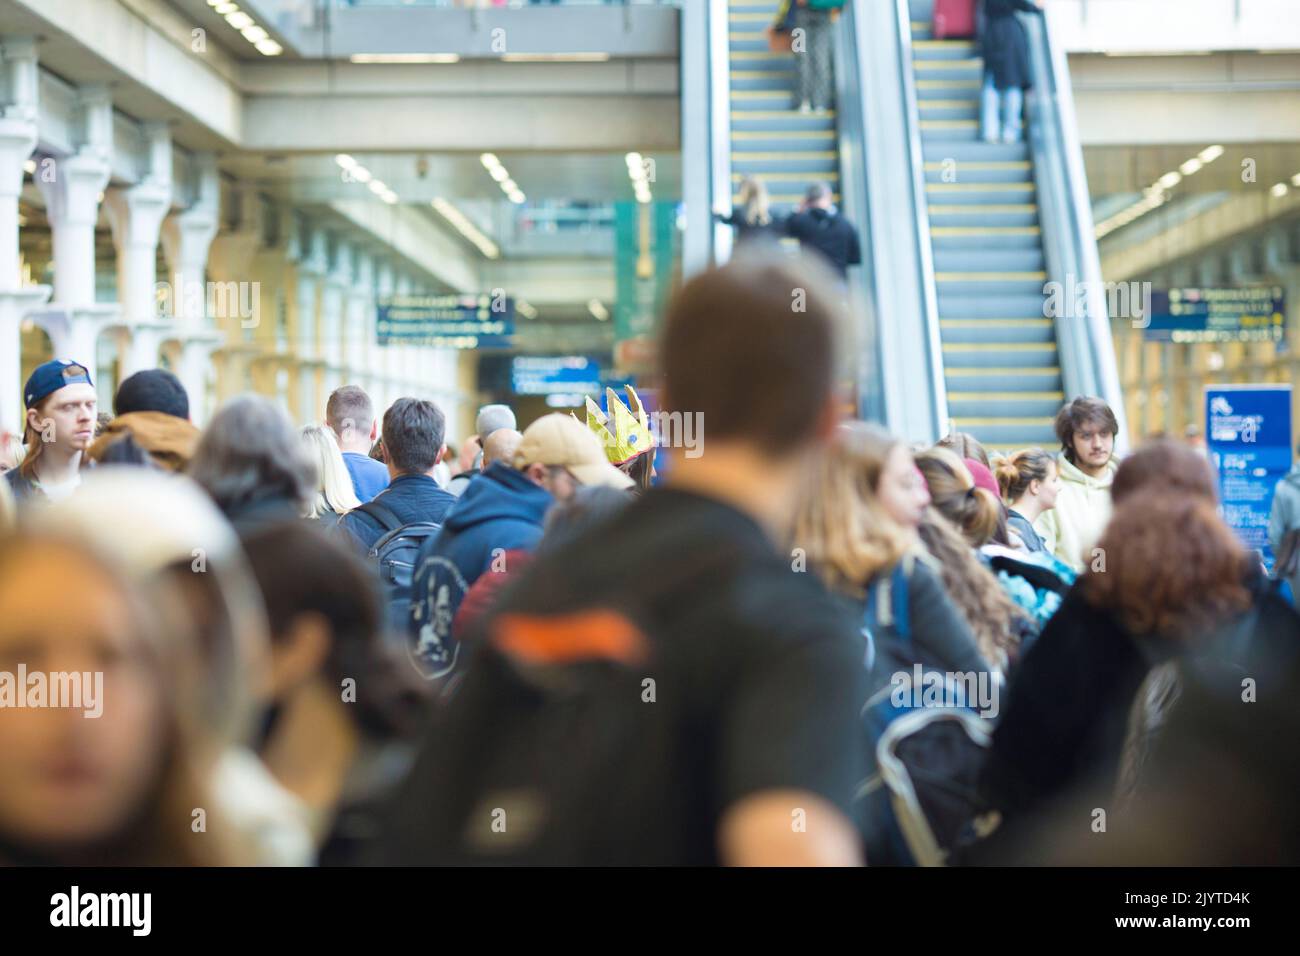 Am Bahnhof St. Pancras in London versammeln sich die Menschen, wenn ein Feiertagswochenende beginnt. Stockfoto